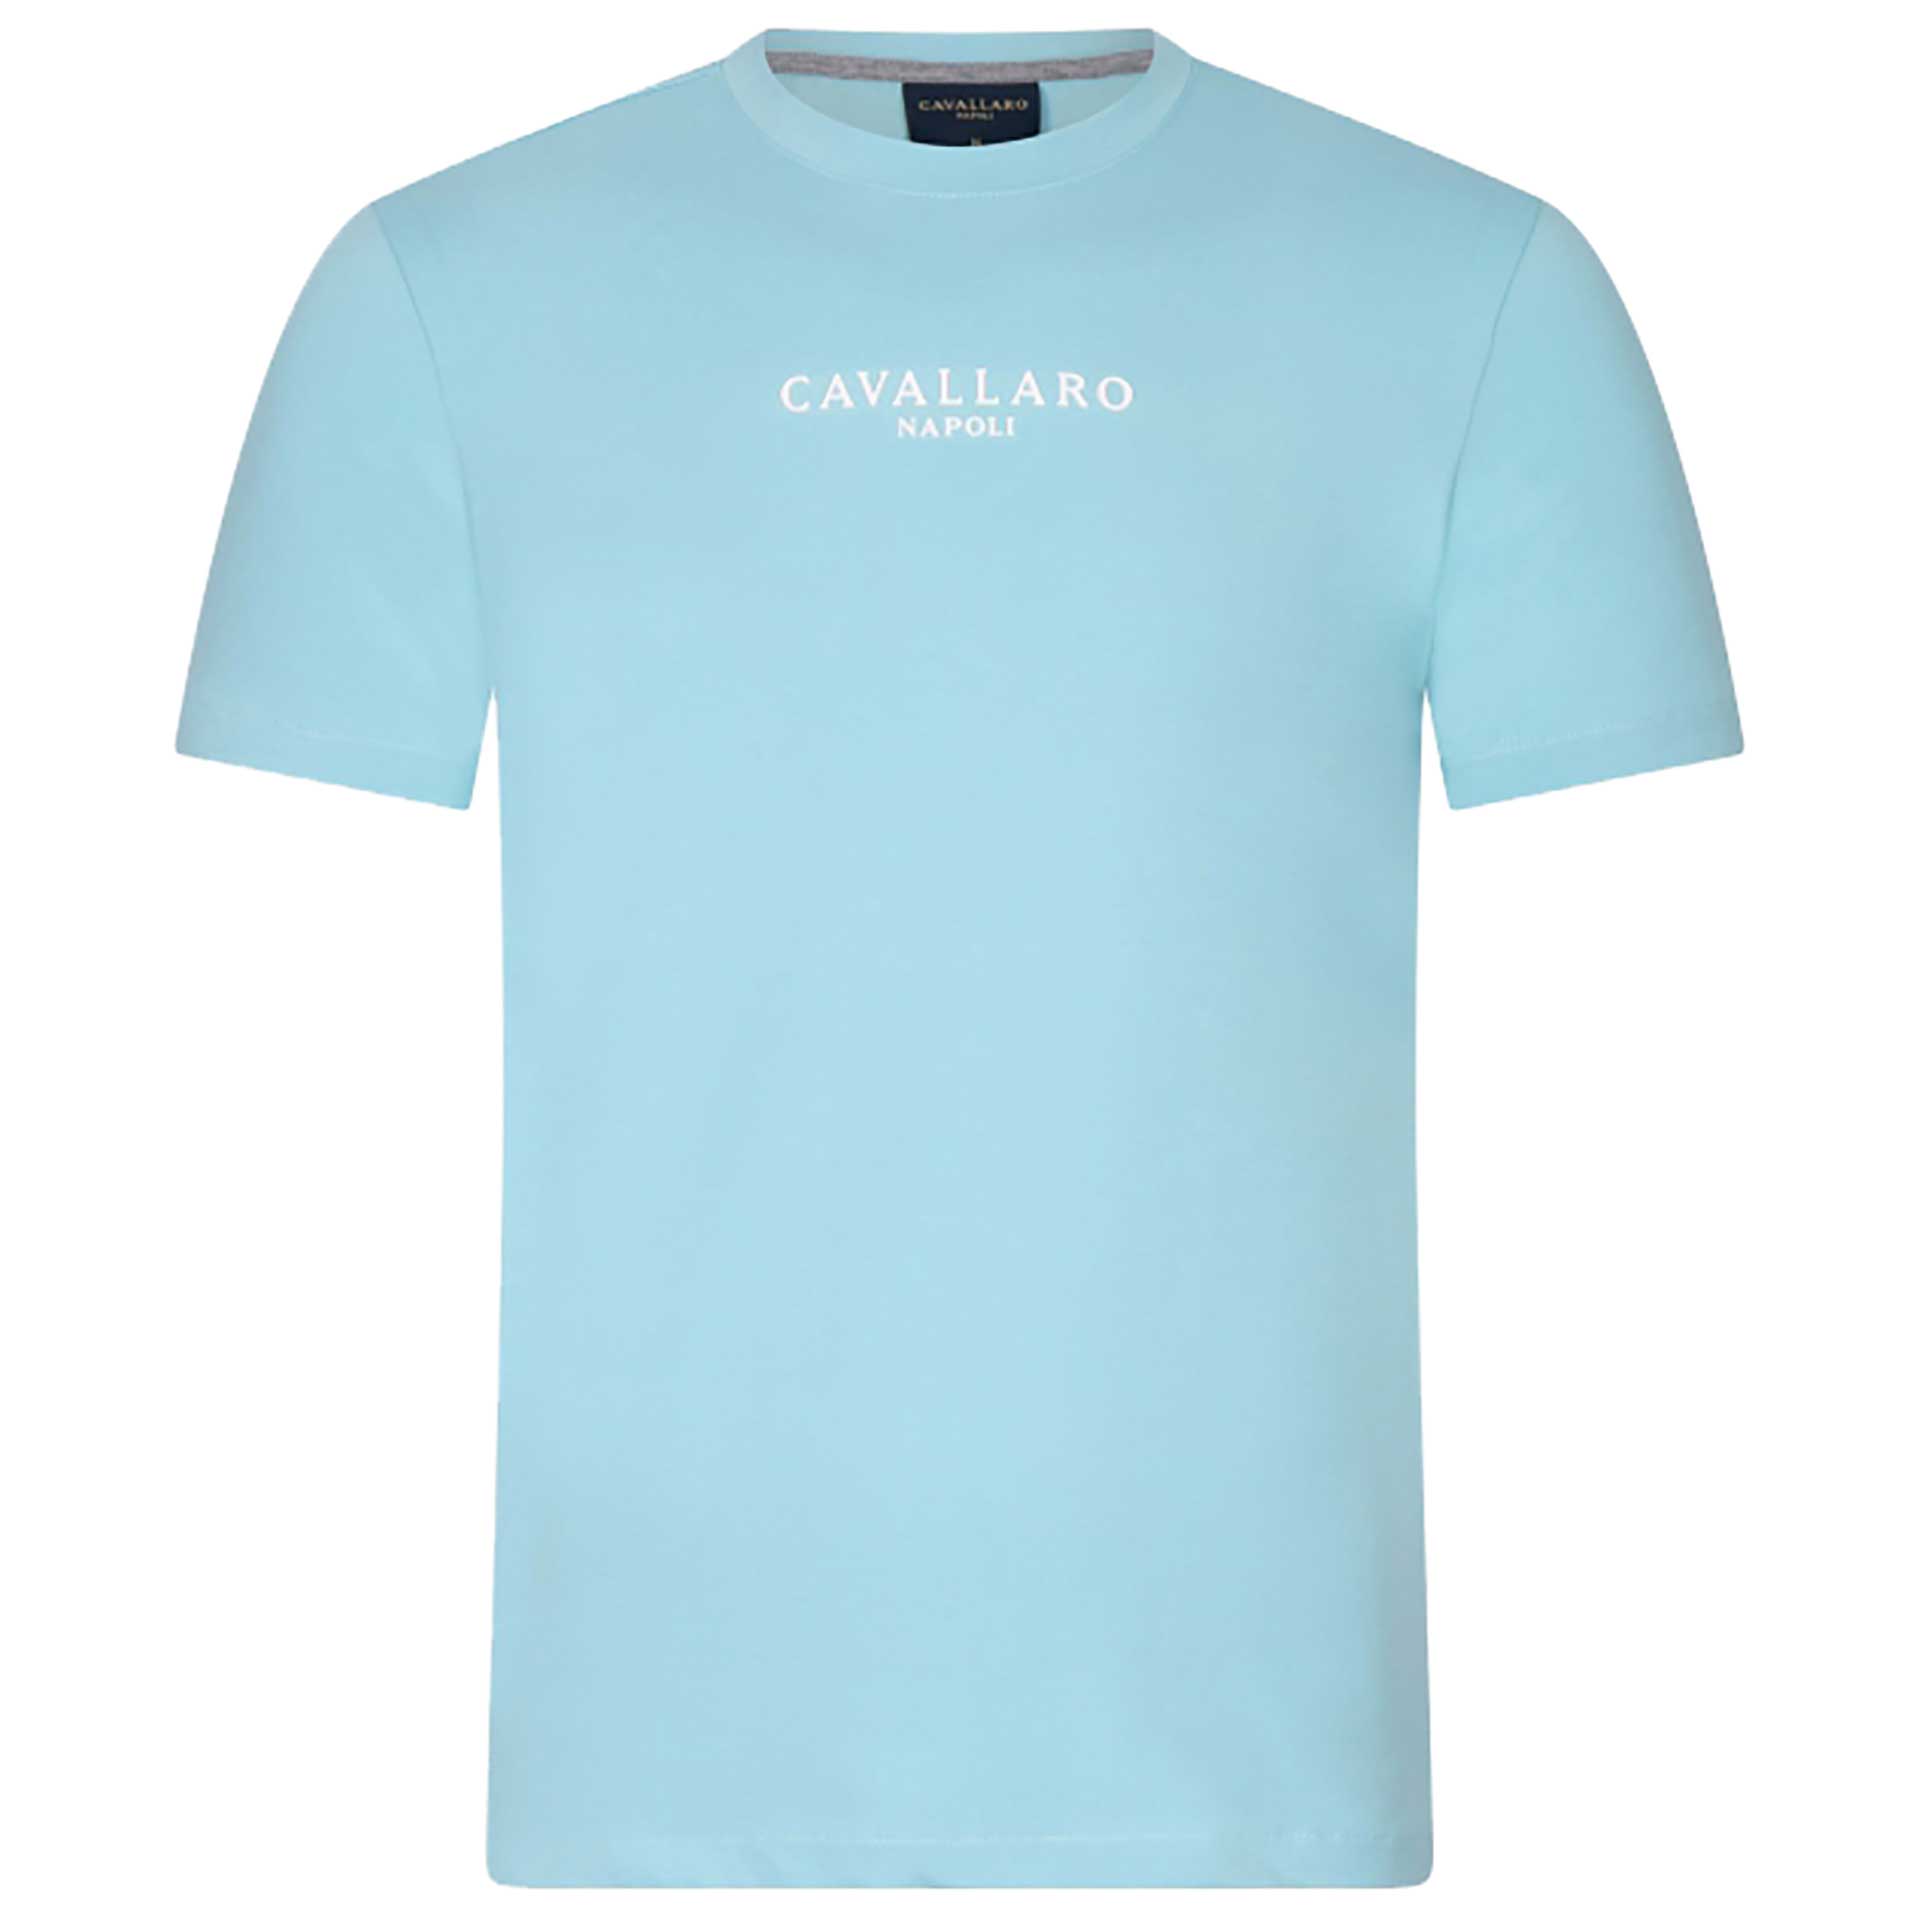 Cavallaro Napoli T-Shirt Mandrio 1